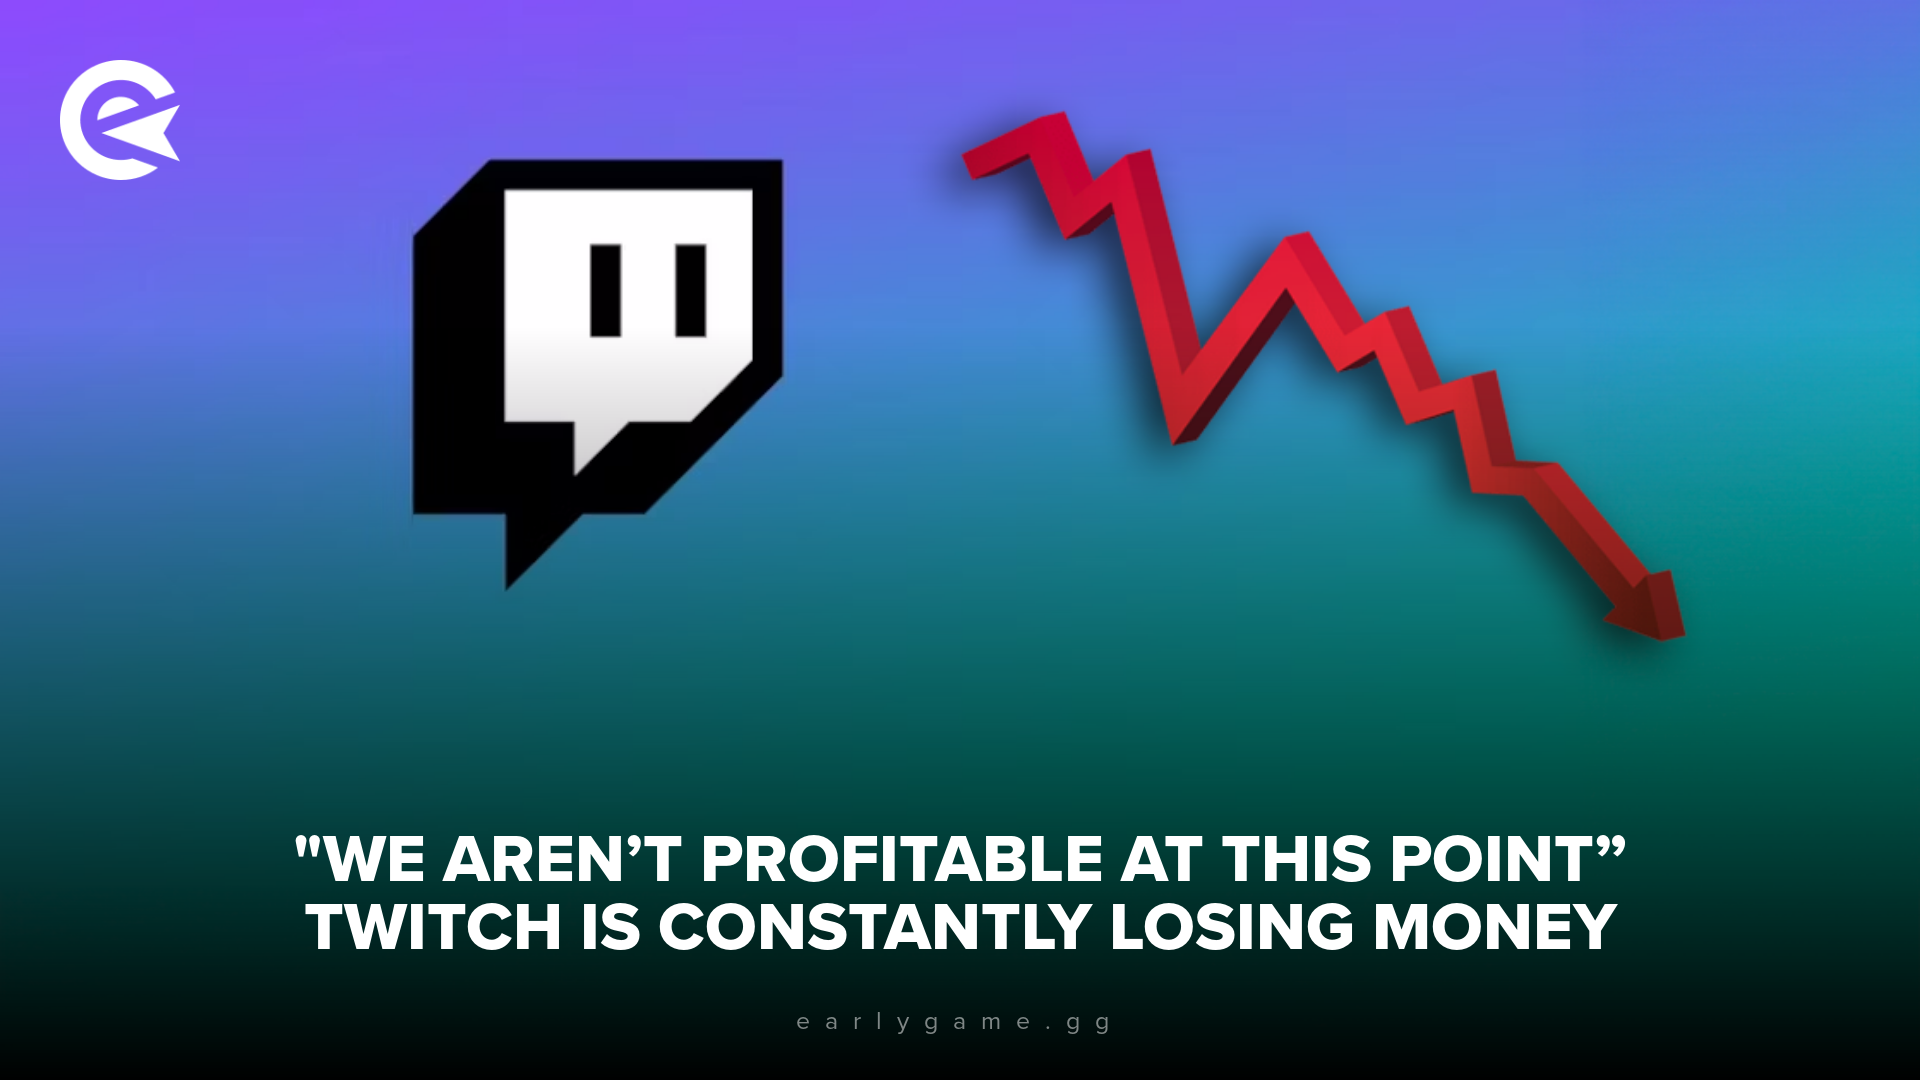 «На данный момент мы не прибыльны»: Twitch постоянно теряет деньги